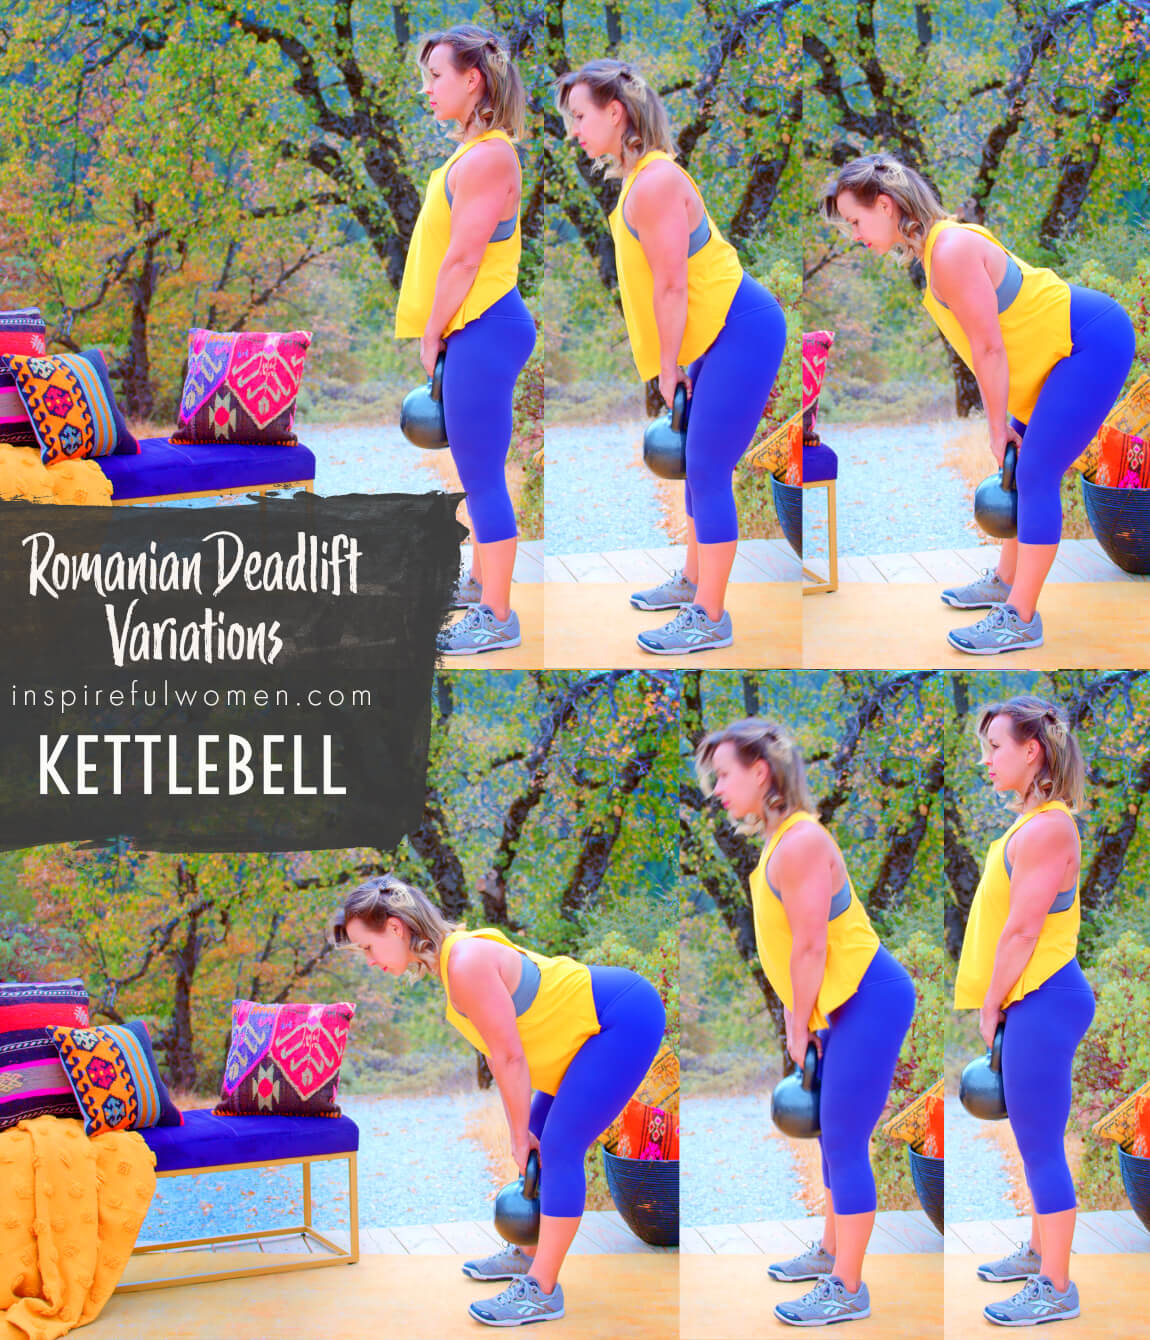 kettlebell-romanian-deadlift-posterior-chain-exercise-variation